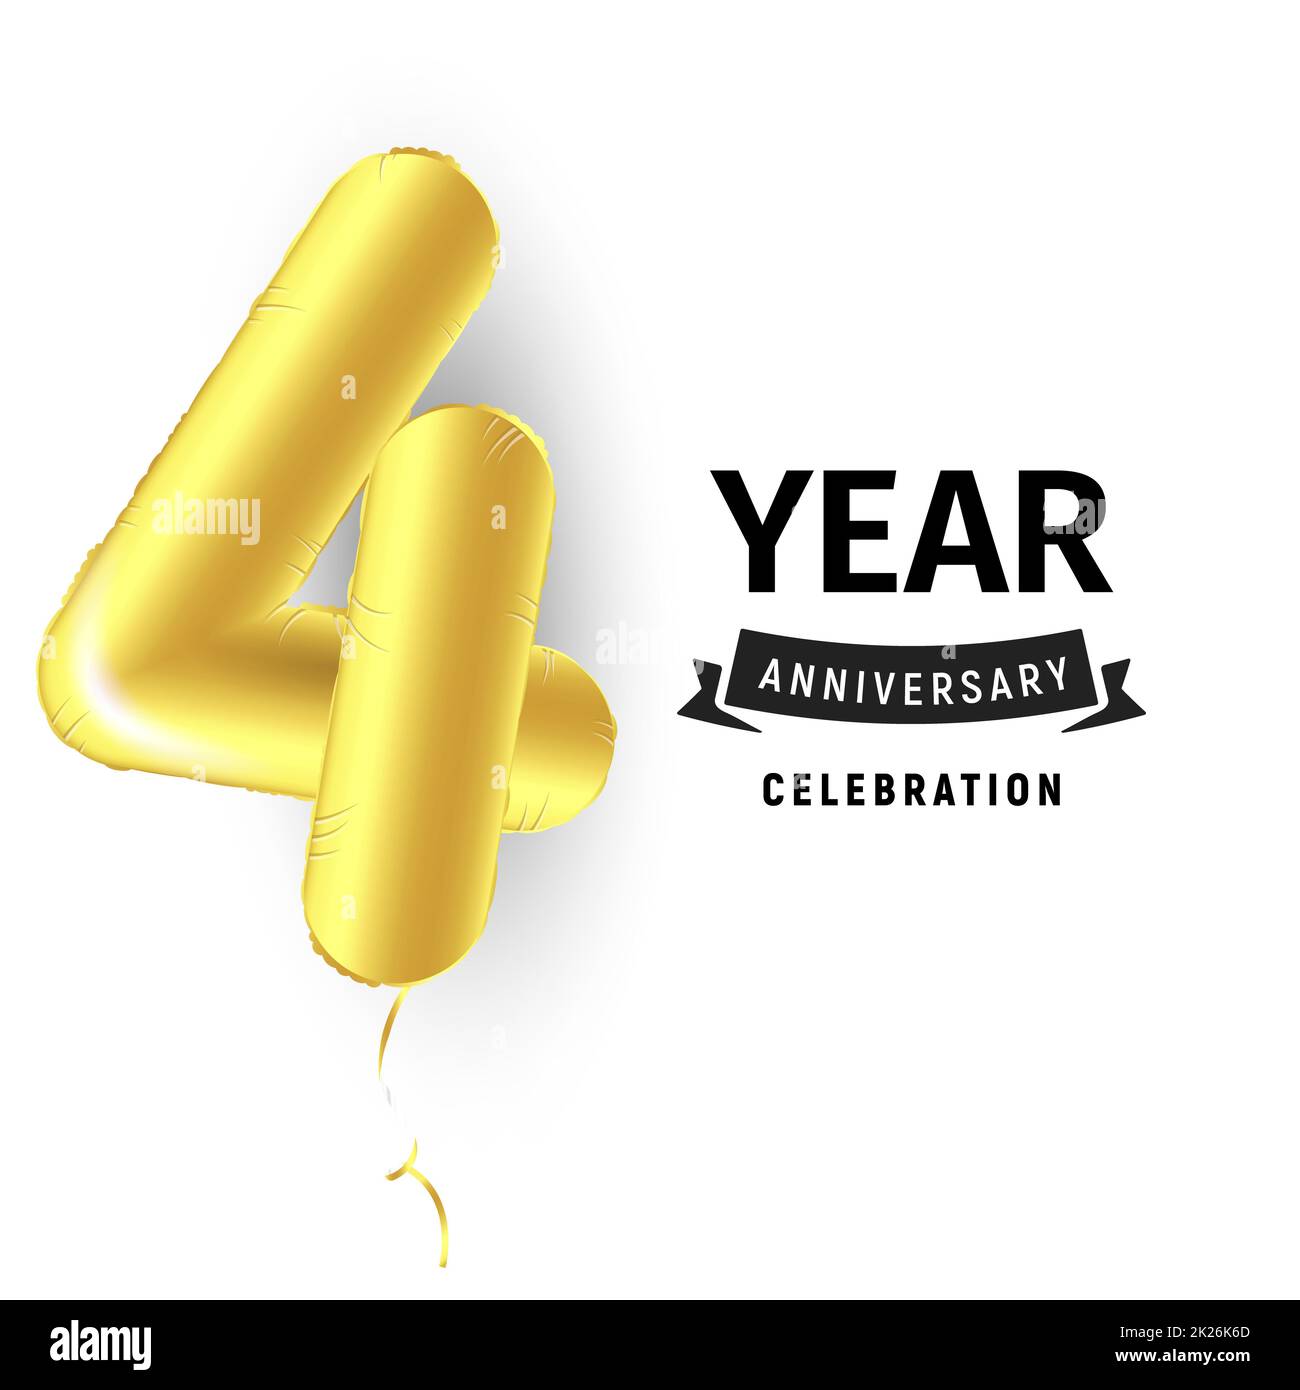 Palla gonfiabile d'oro un anno con il simbolo 4. Illustrazione vettoriale o poster per celebrare il quarto compleanno di un bambino, di un'azienda, di un anniversario Foto Stock